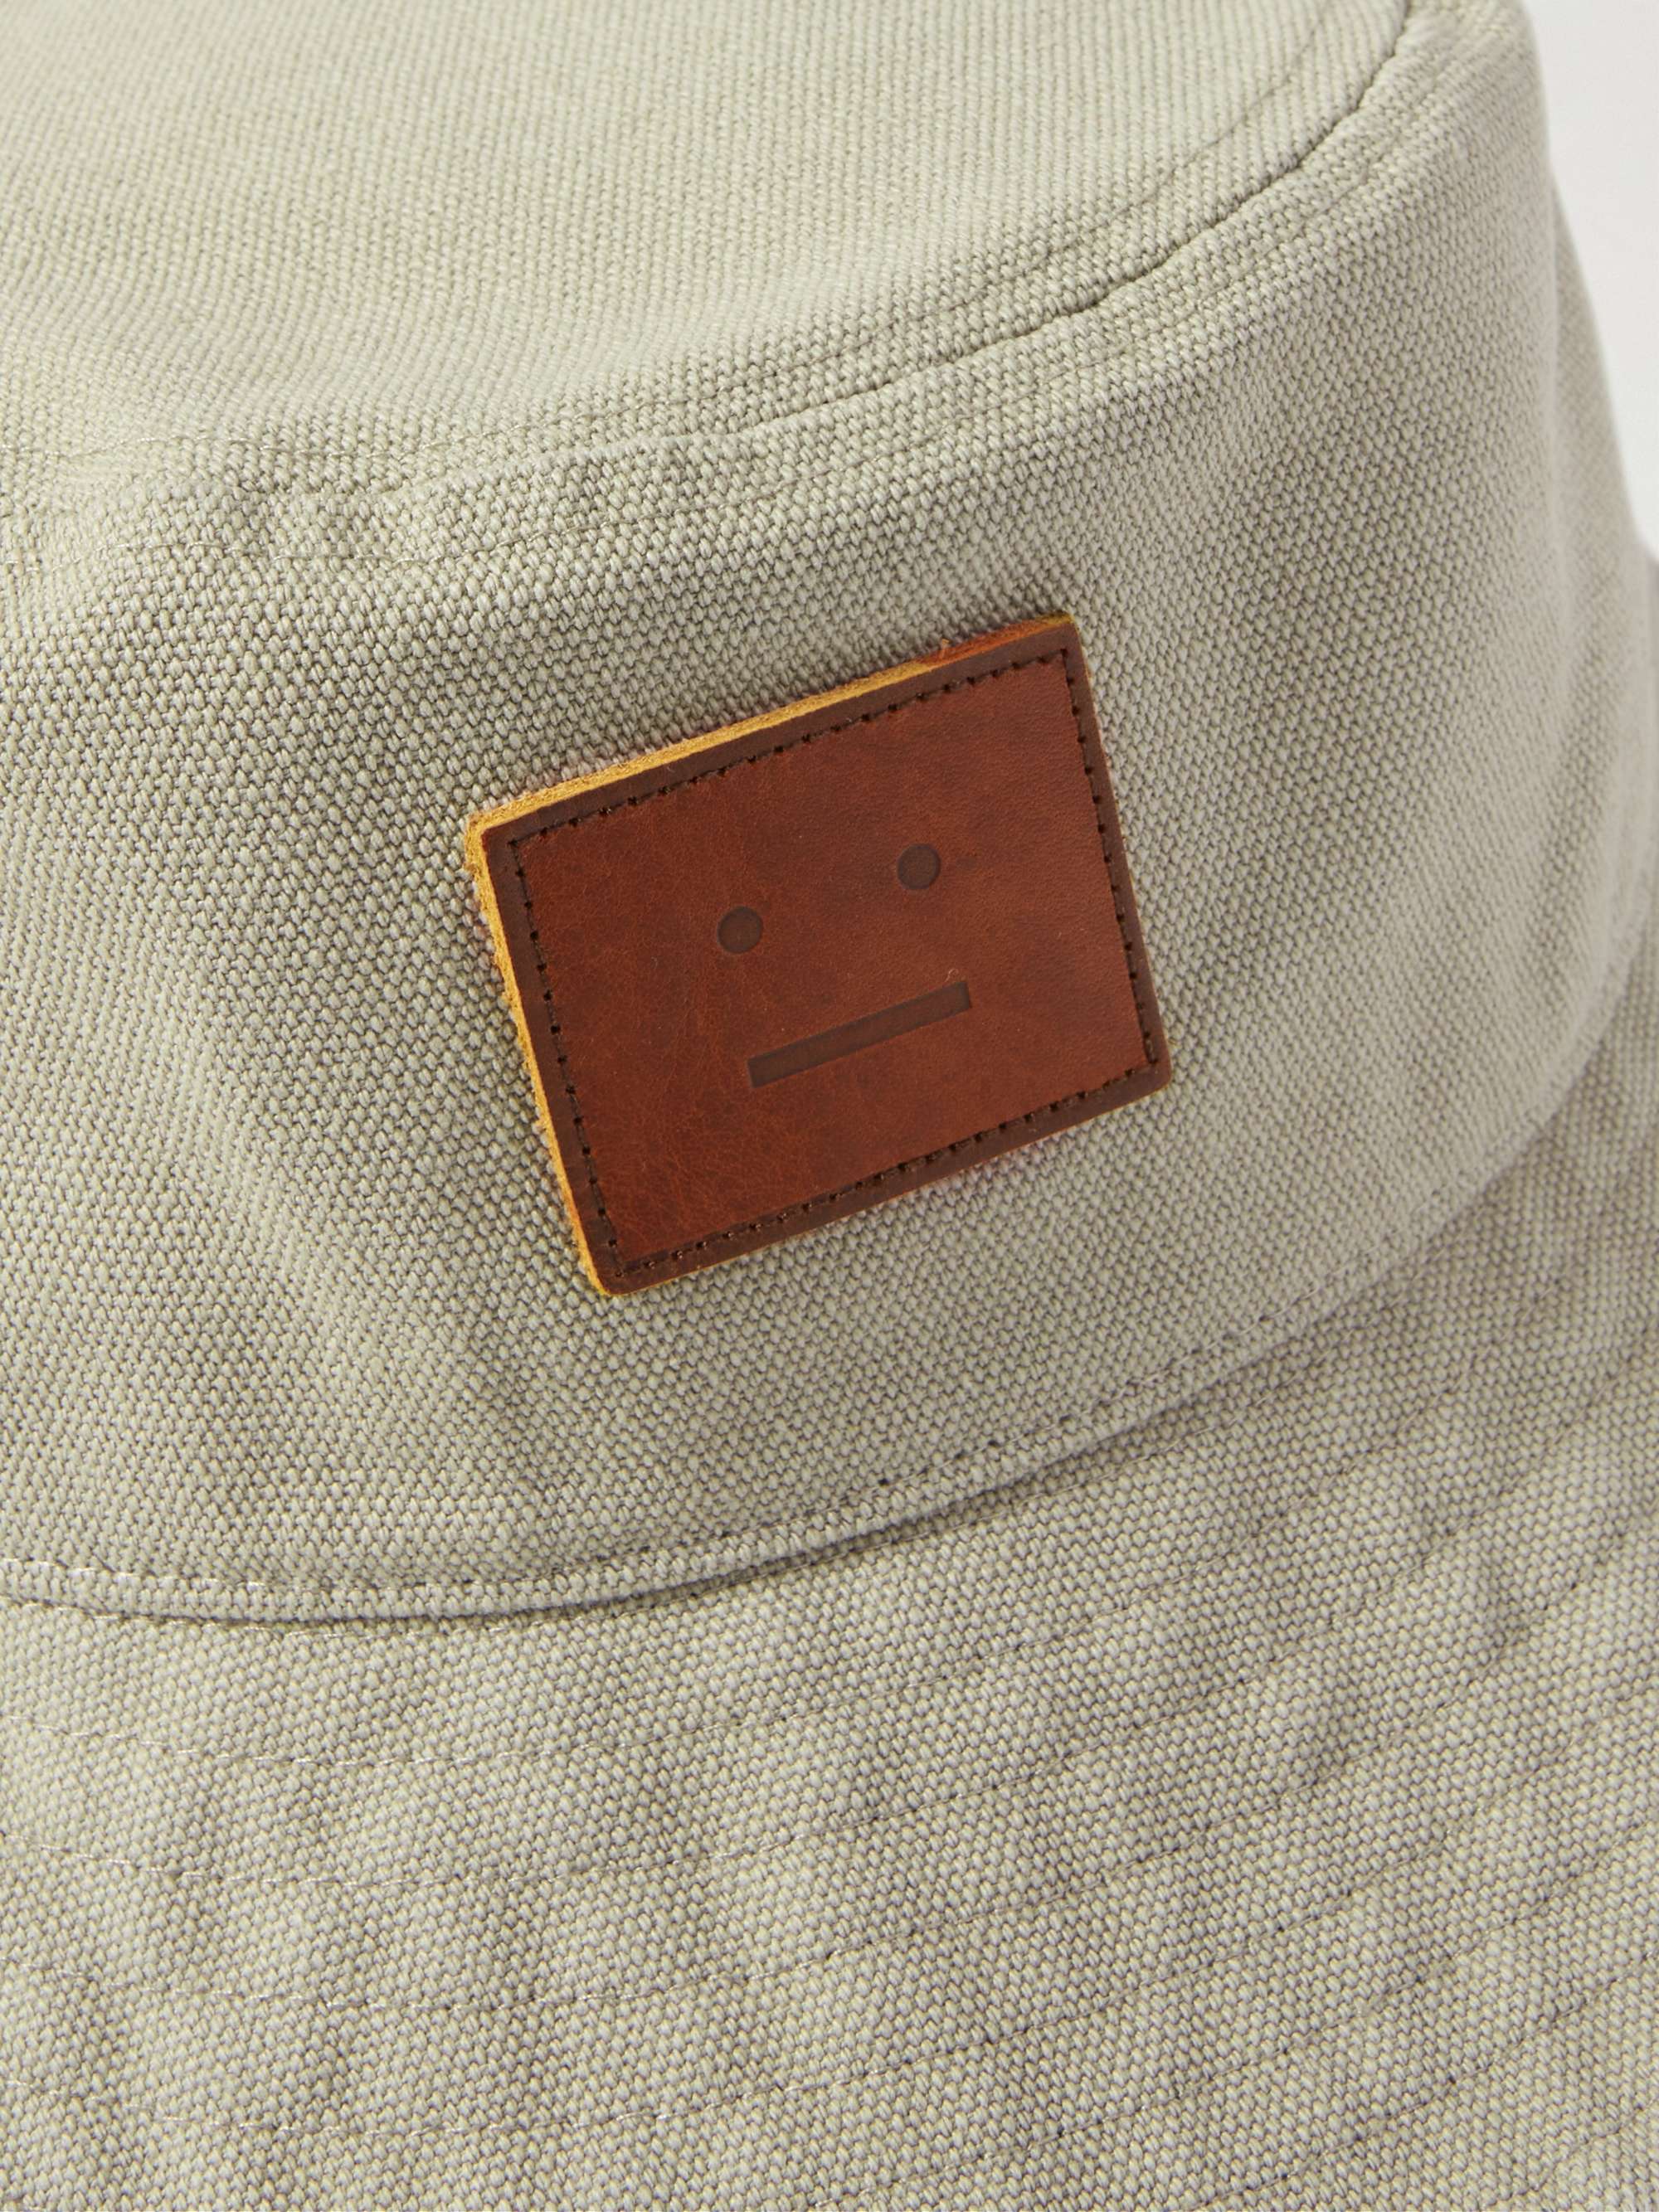 ACNE STUDIOS Logo-Appliquéd Cotton-Canvas Bucket Hat